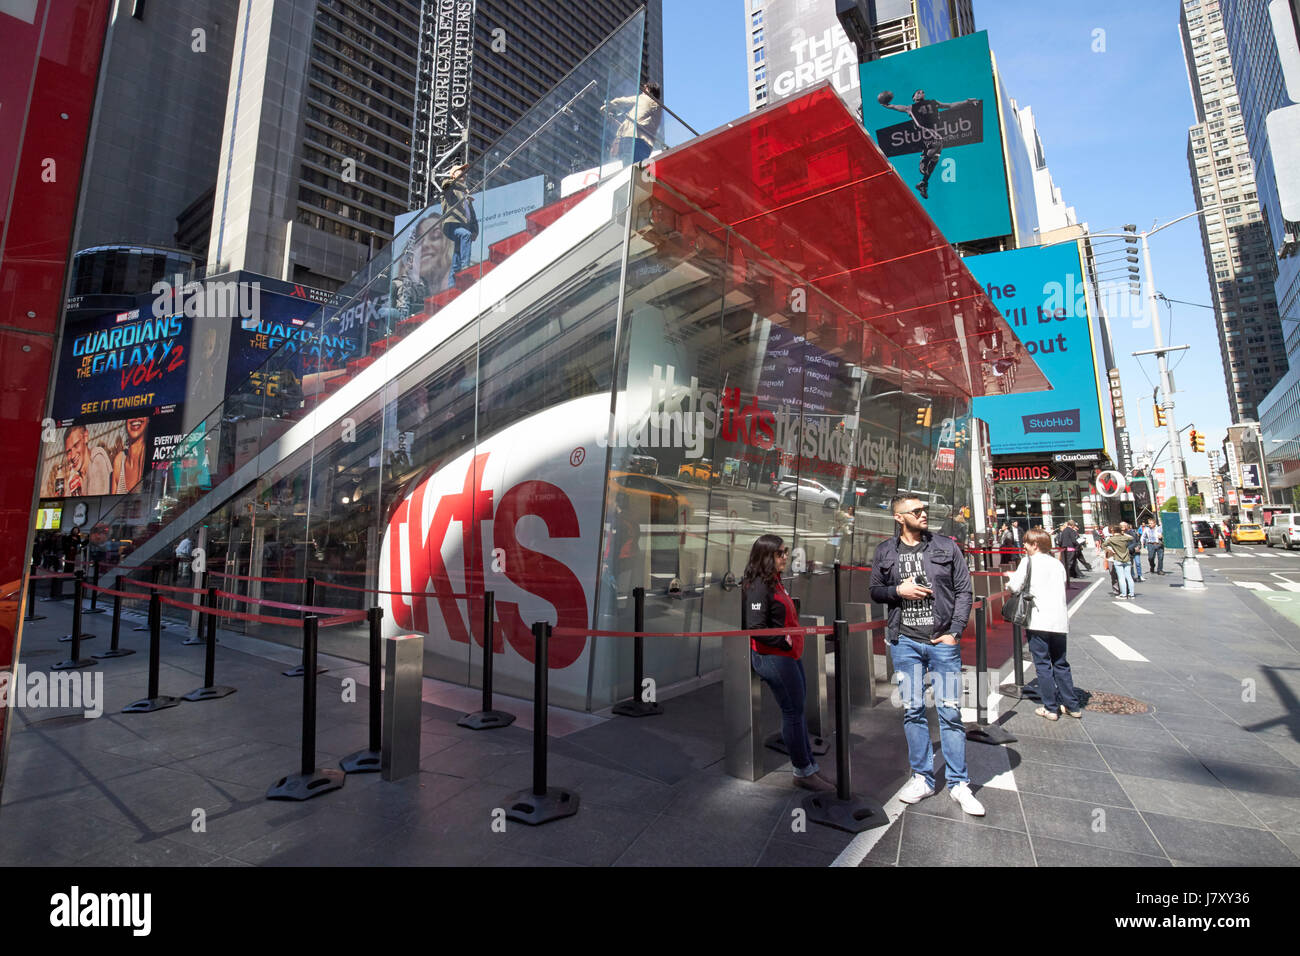 Billet de spectacle prix réduit tkts outlet Times Square New York City USA Banque D'Images